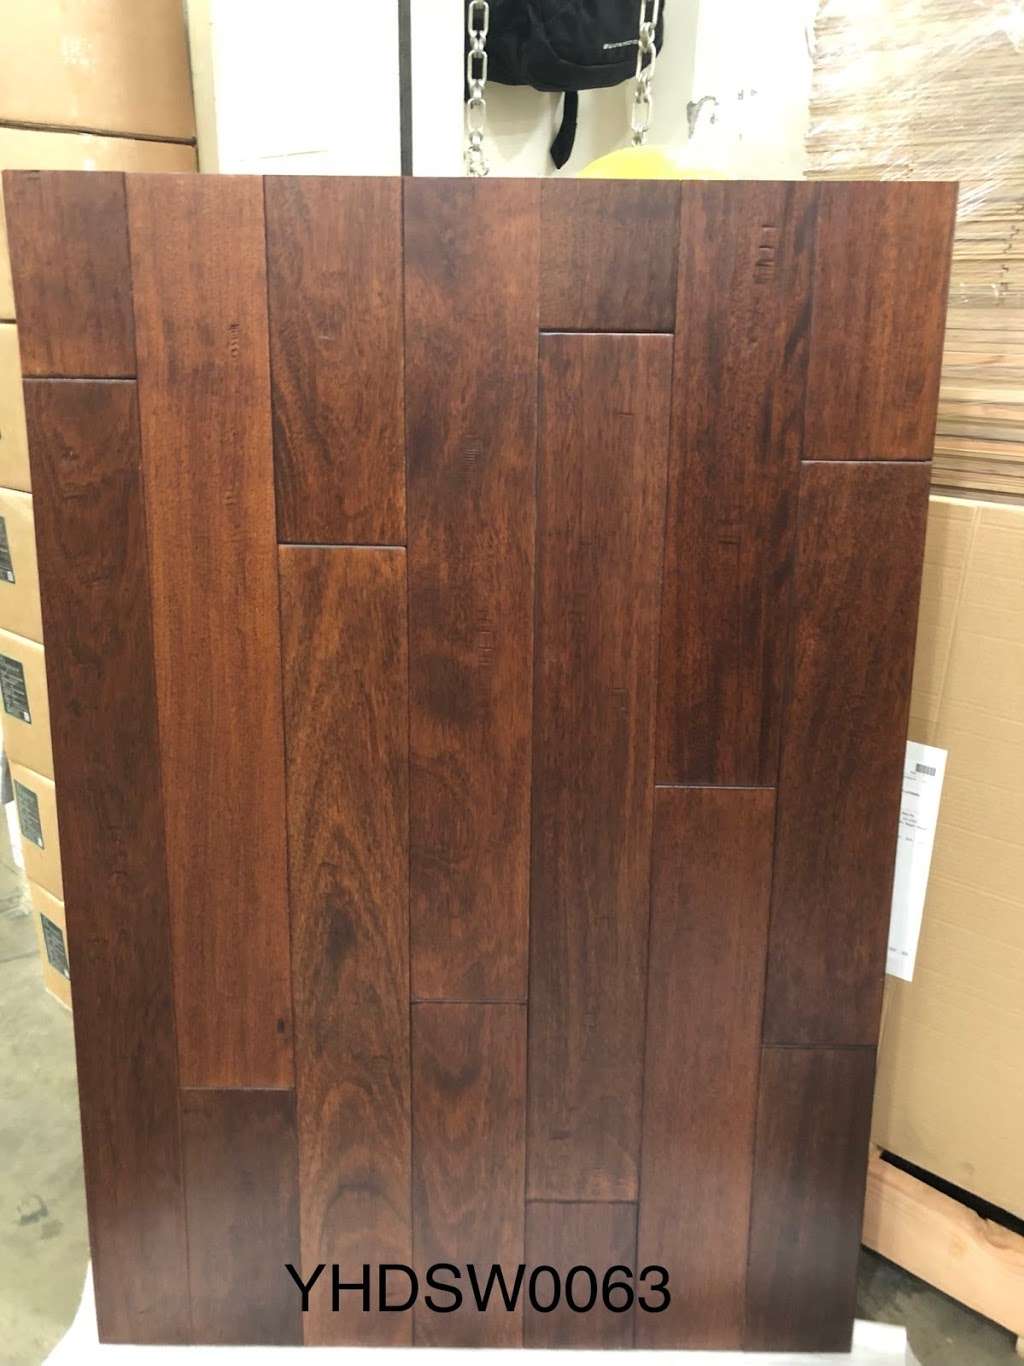 Capital Wood Floor Palm Floors 3656, Hardwood Flooring Glendale Ca